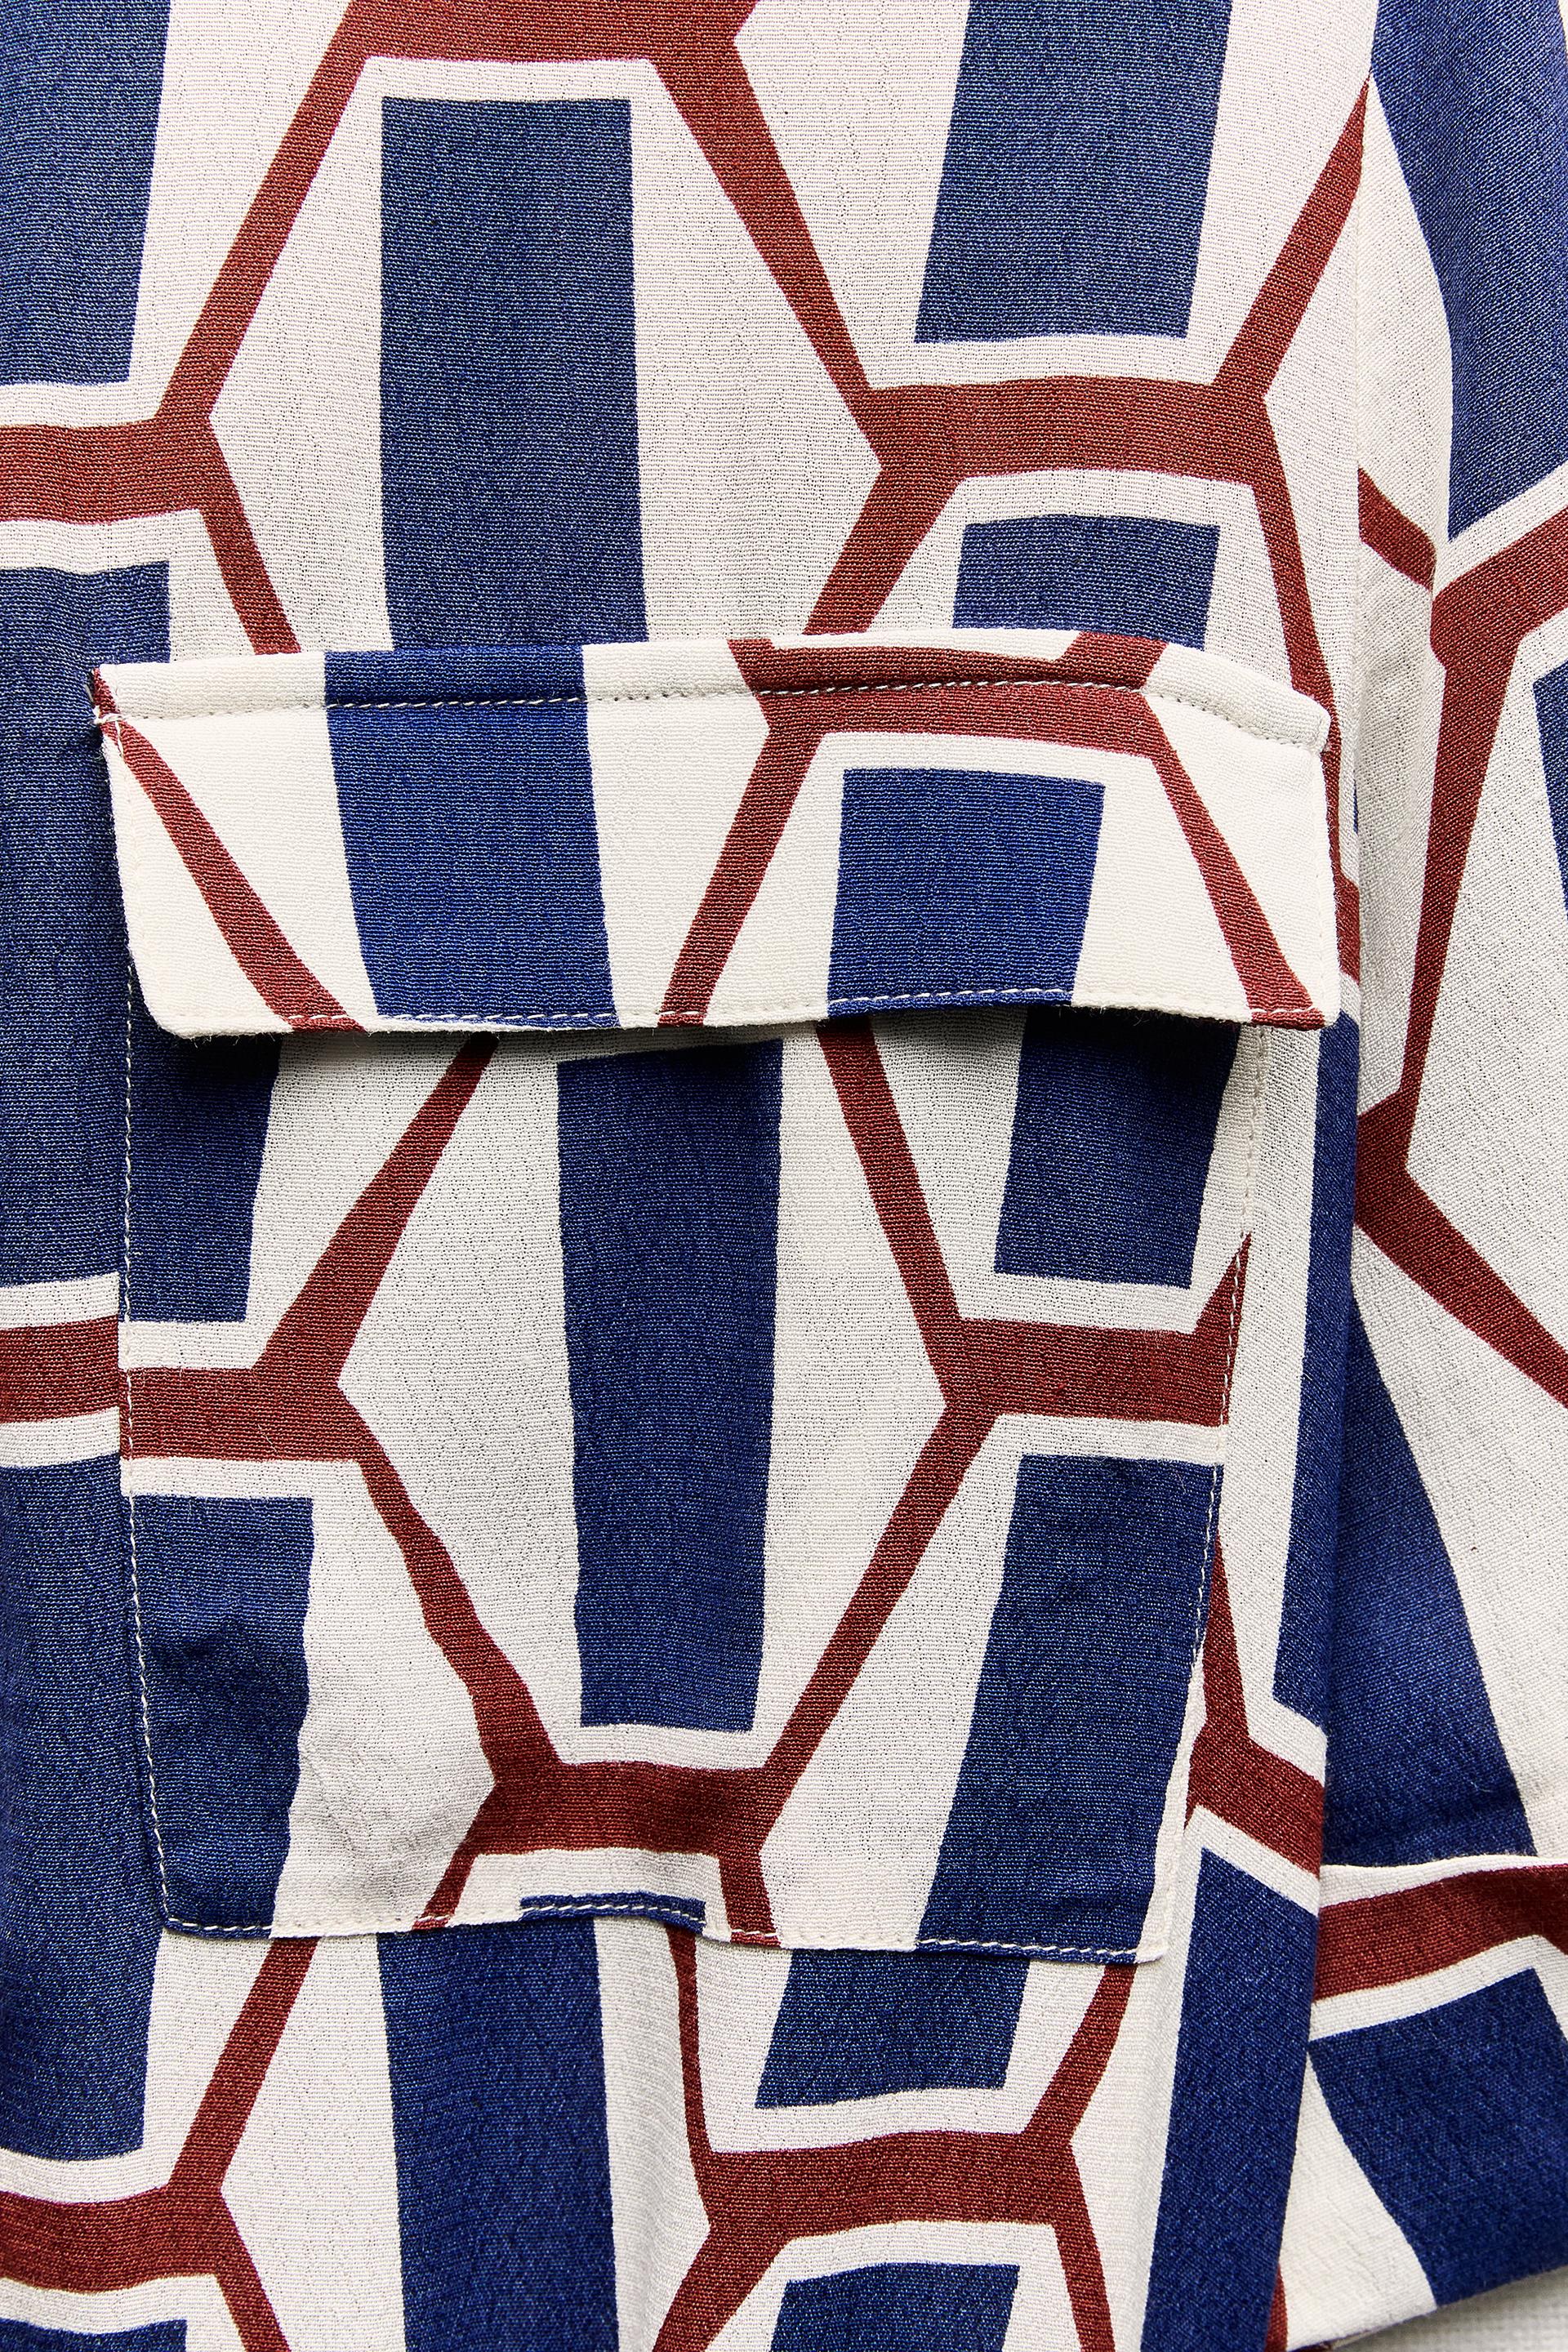 Zara AW18 Geometric Print Tunic Shirt Belted Dress 8026/817 Size